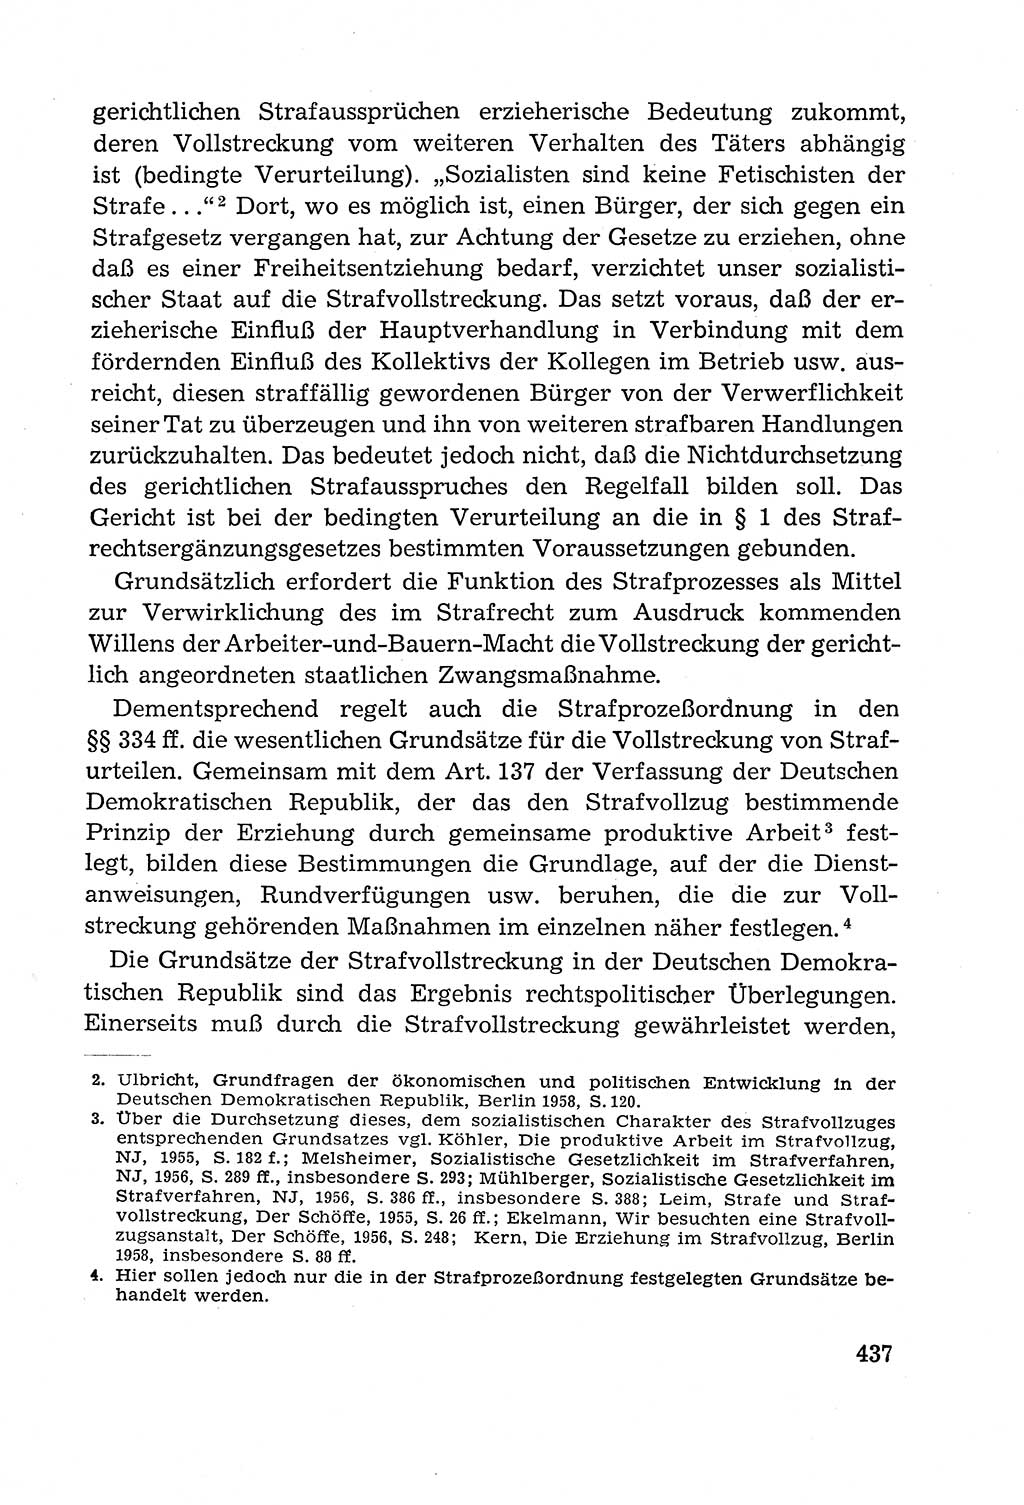 Leitfaden des Strafprozeßrechts der Deutschen Demokratischen Republik (DDR) 1959, Seite 437 (LF StPR DDR 1959, S. 437)